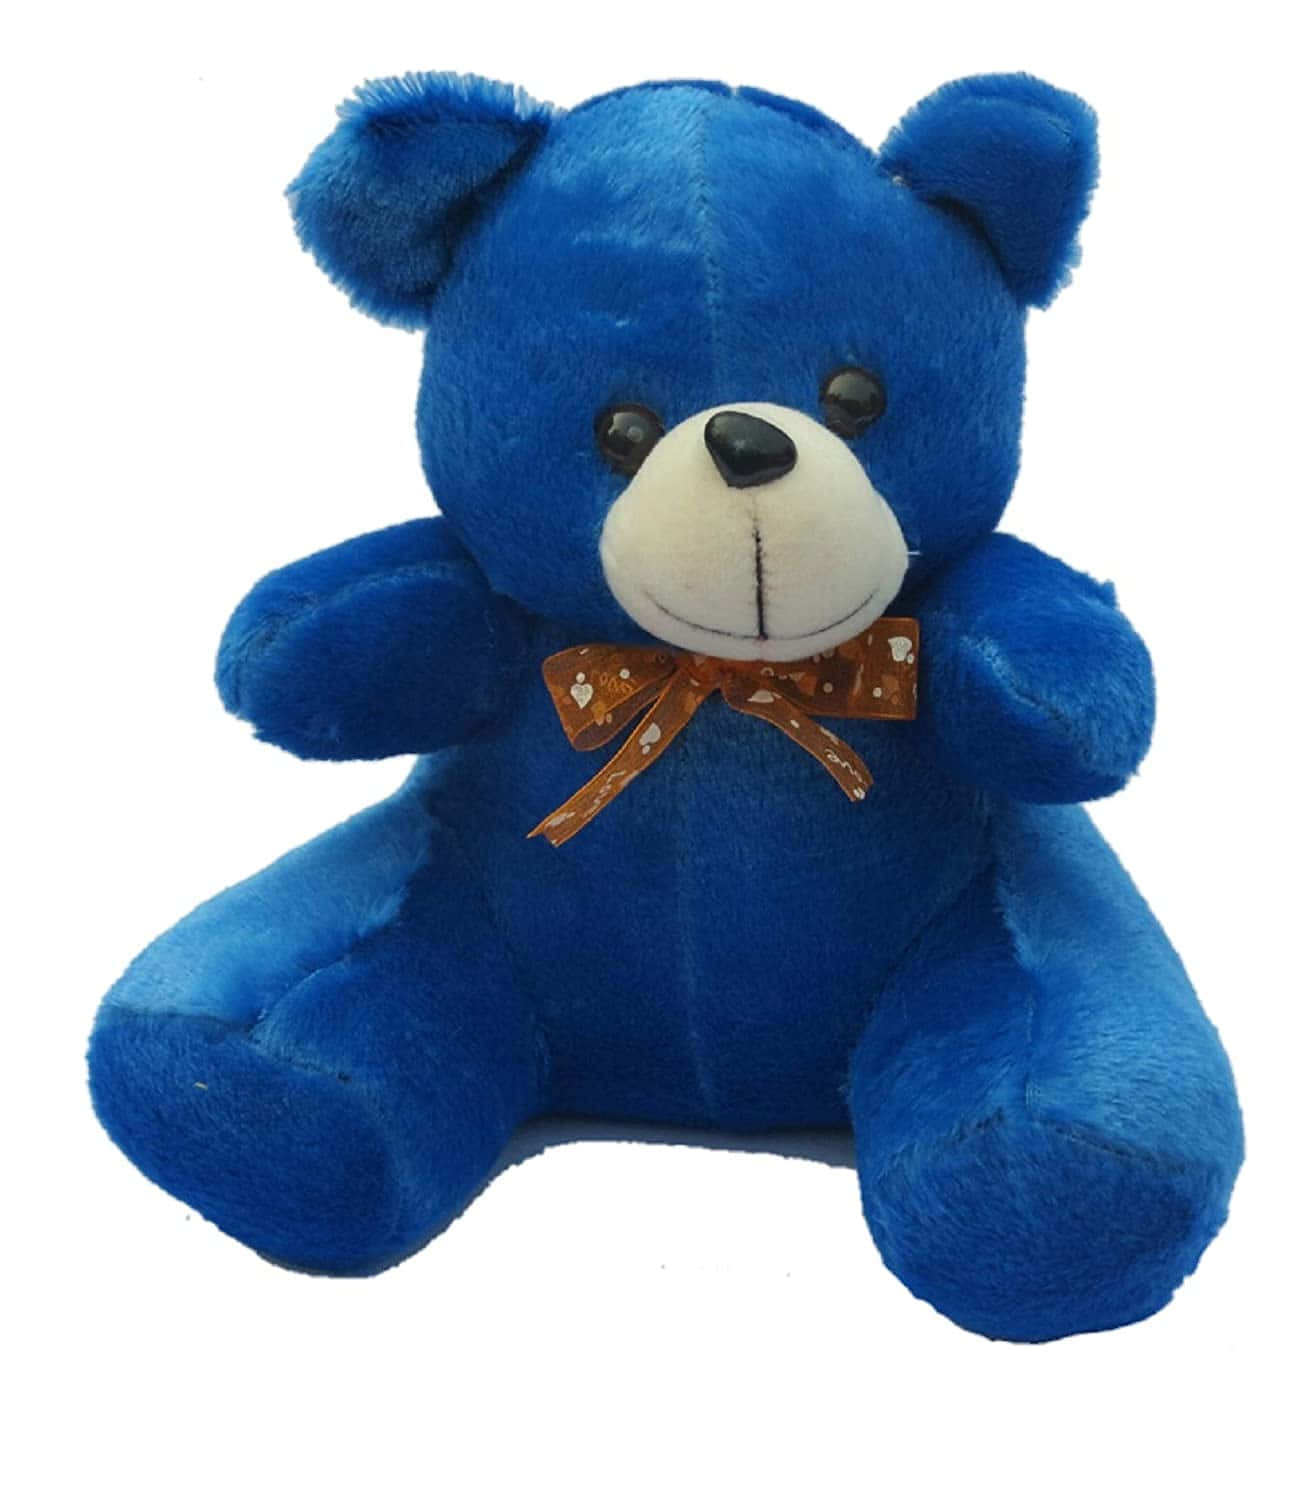 Verbreiteliebe, Großzügigkeit Und Freude Mit Einem Kuscheligen Teddybären.